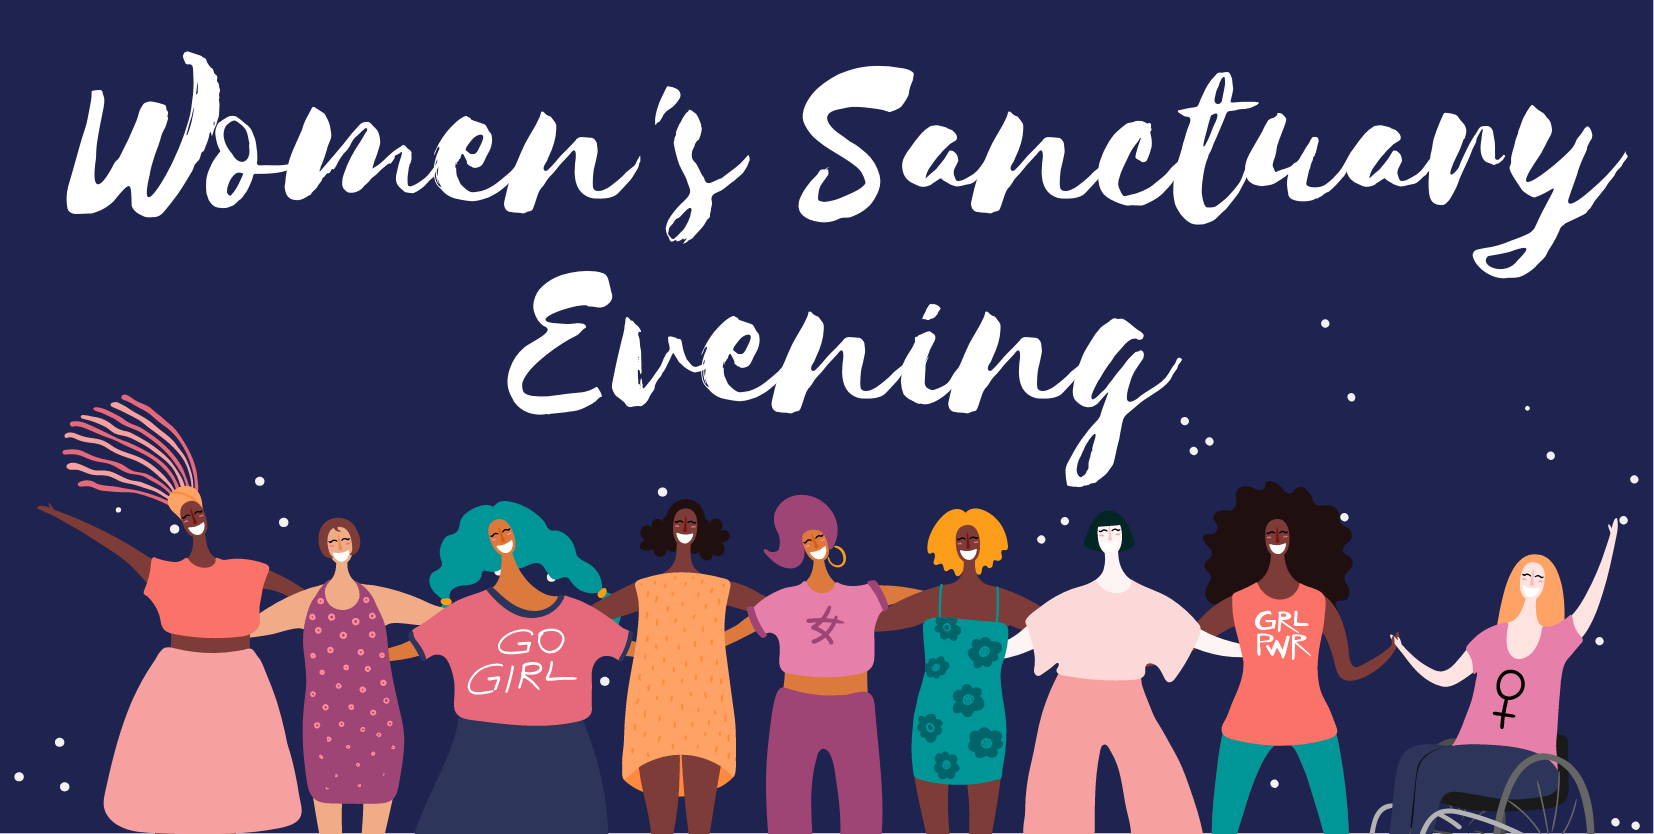 Women's Sanctuary Evening